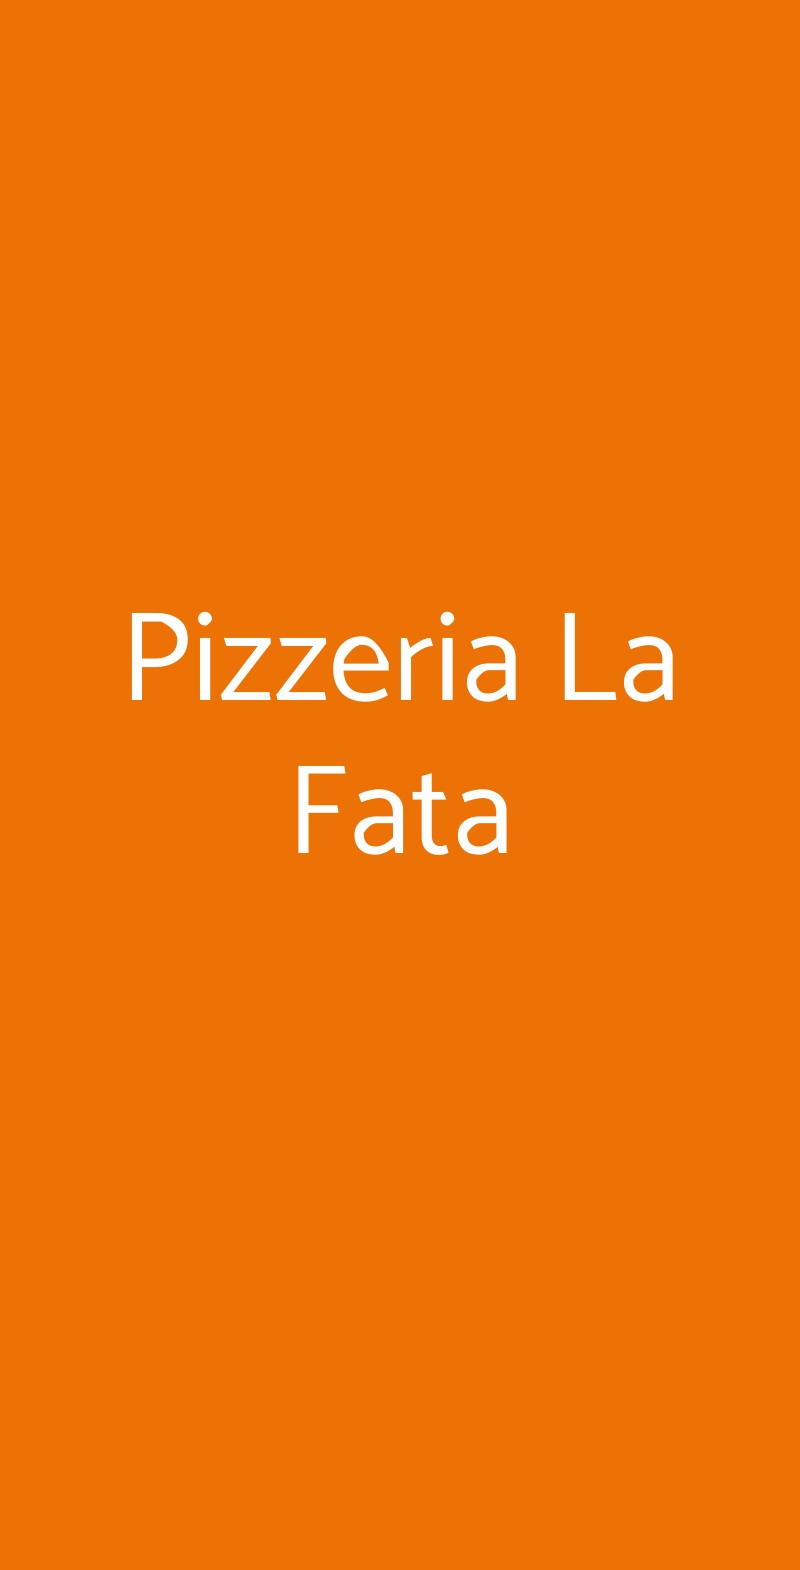 Pizzeria La Fata Milano menù 1 pagina